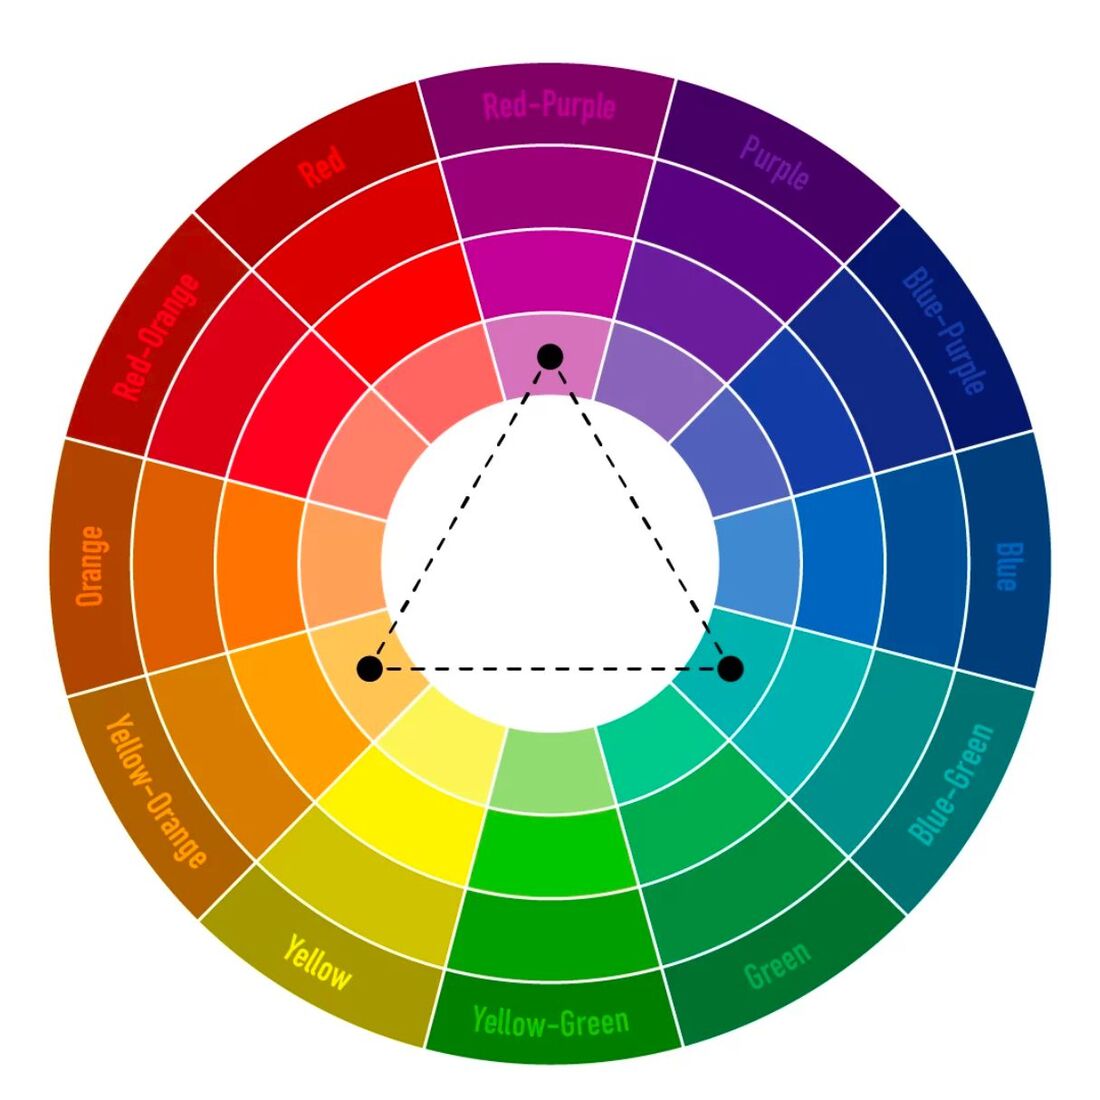 Phối màu gạch vệ sinh theo mô hình tam giác (Triadic Color Scheme)